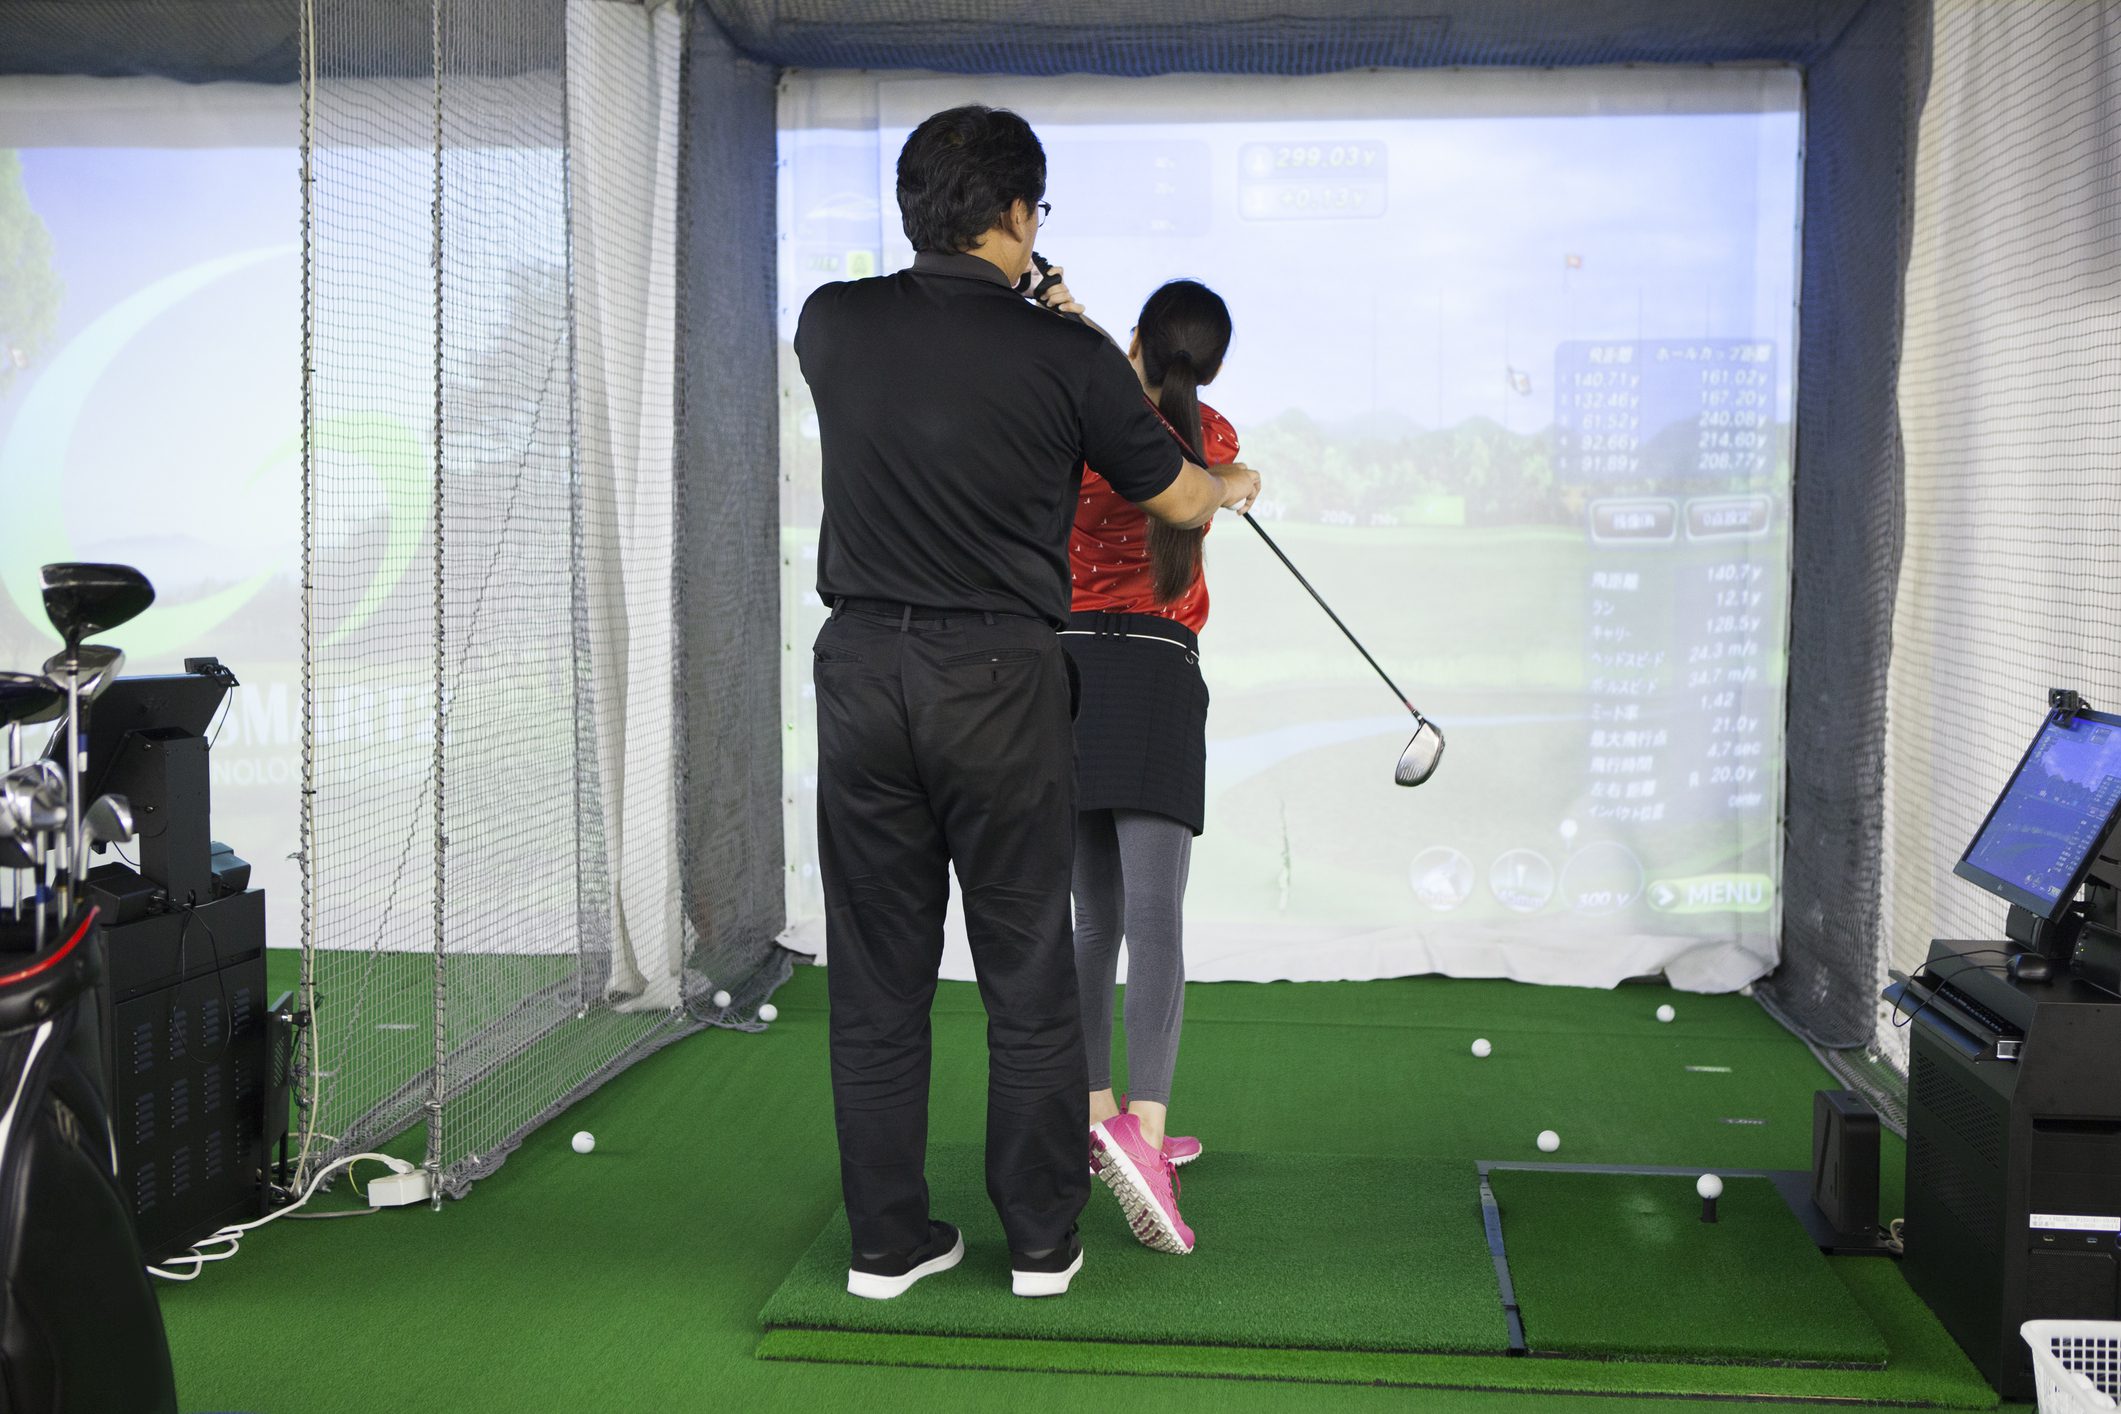 Una mujer practicando en un estudio de golf y un hombre con un entrenador.